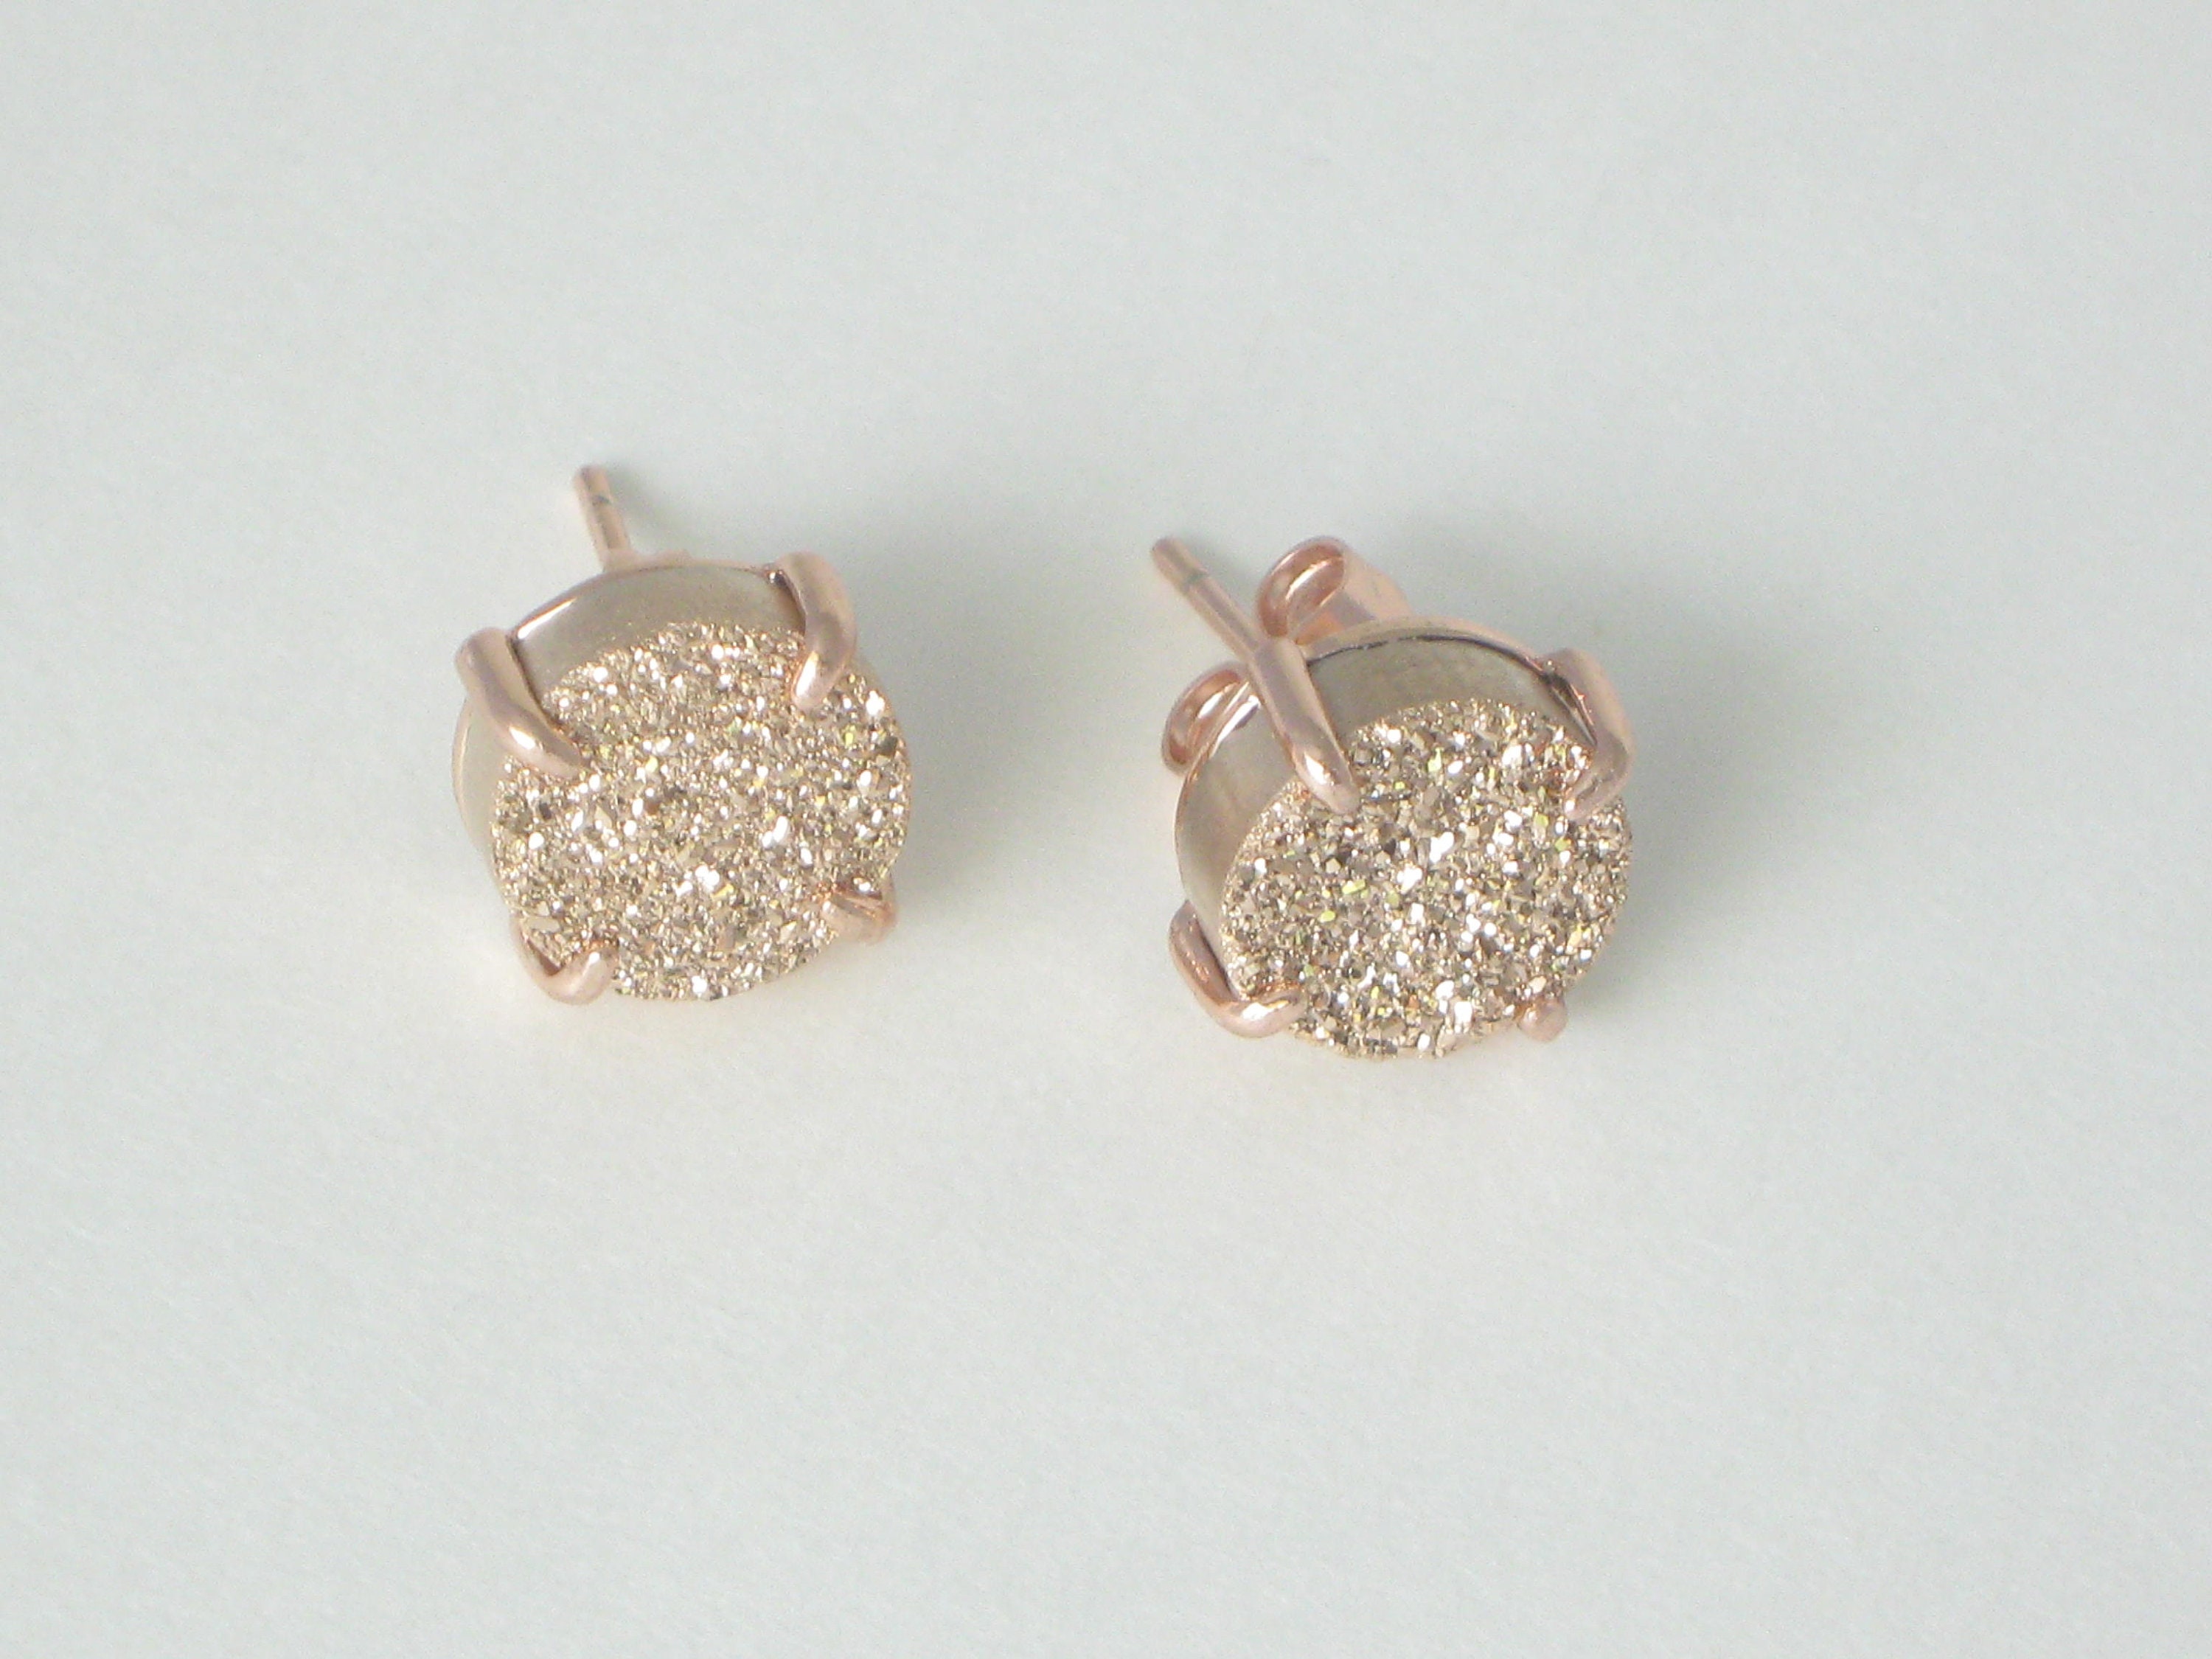 Rose Gold Druzy Studs Stud Earrings Druzy earrings 10 mm | Etsy